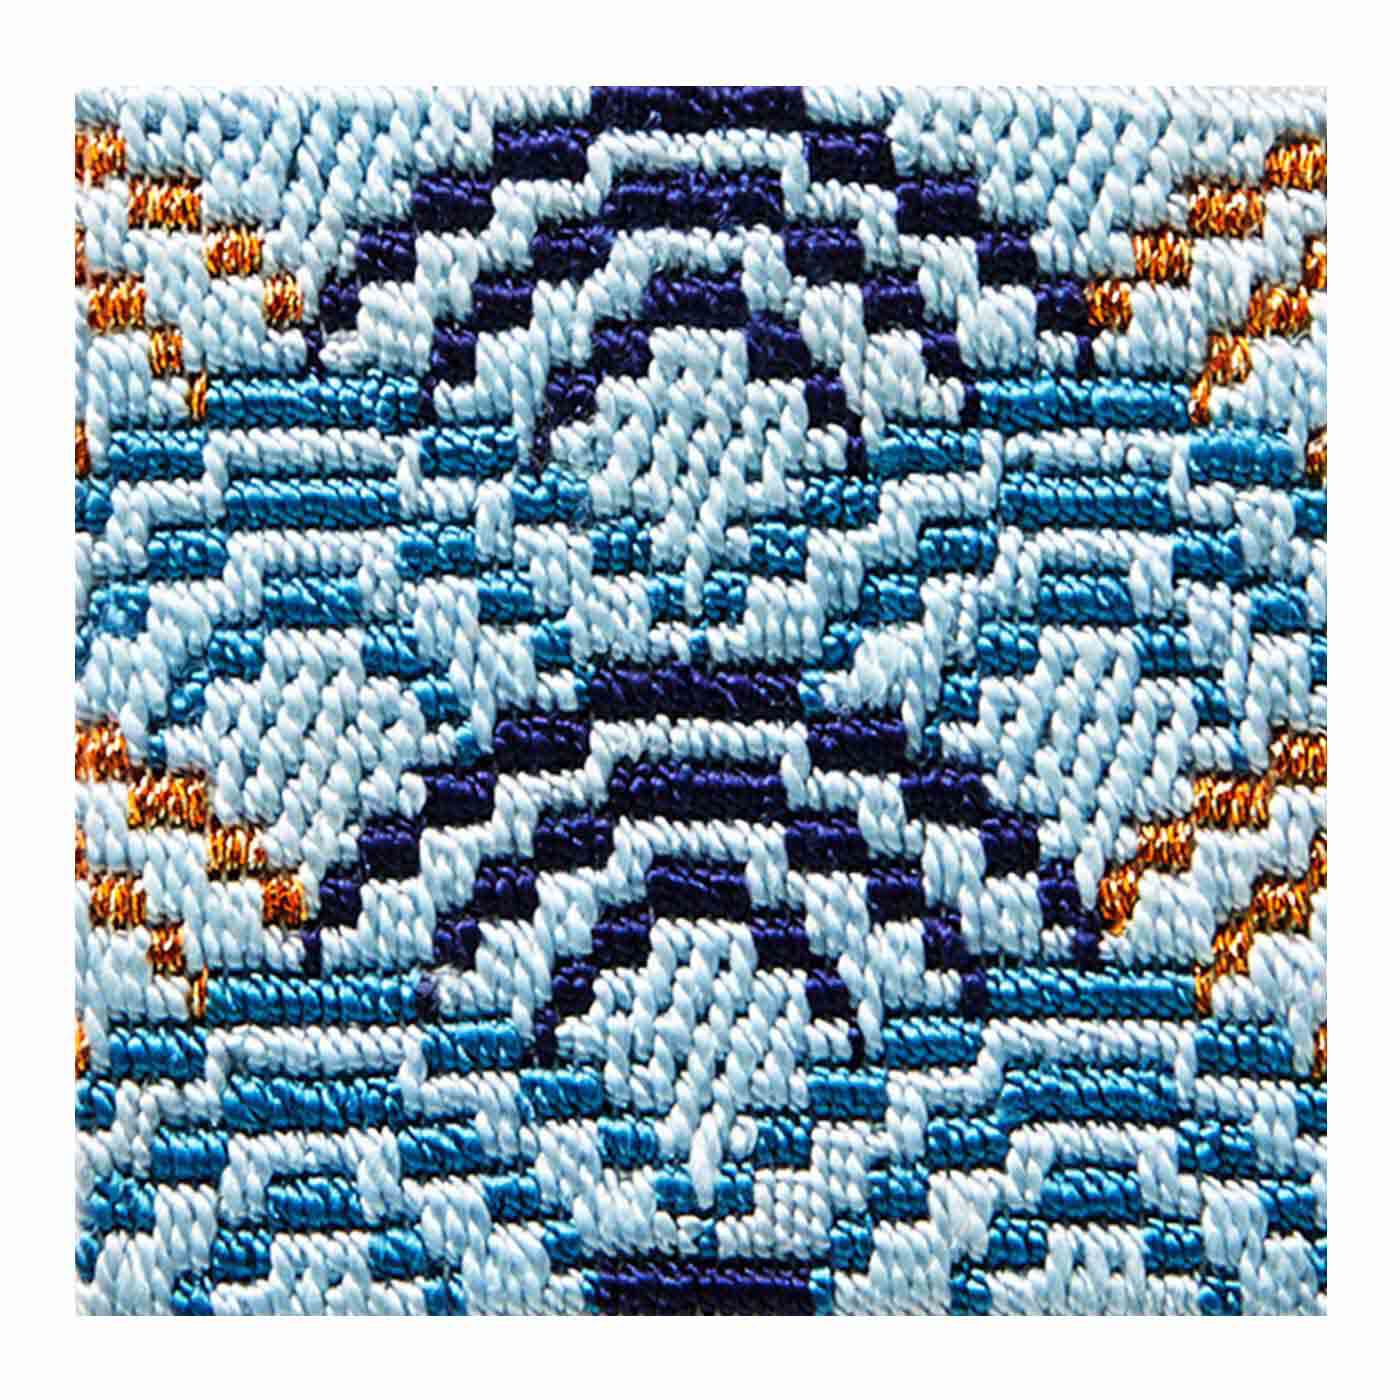 クチュリエ|絹糸の光沢にうっとり さまざまな模様を楽しむ絽（ろ）刺しの会|青海波